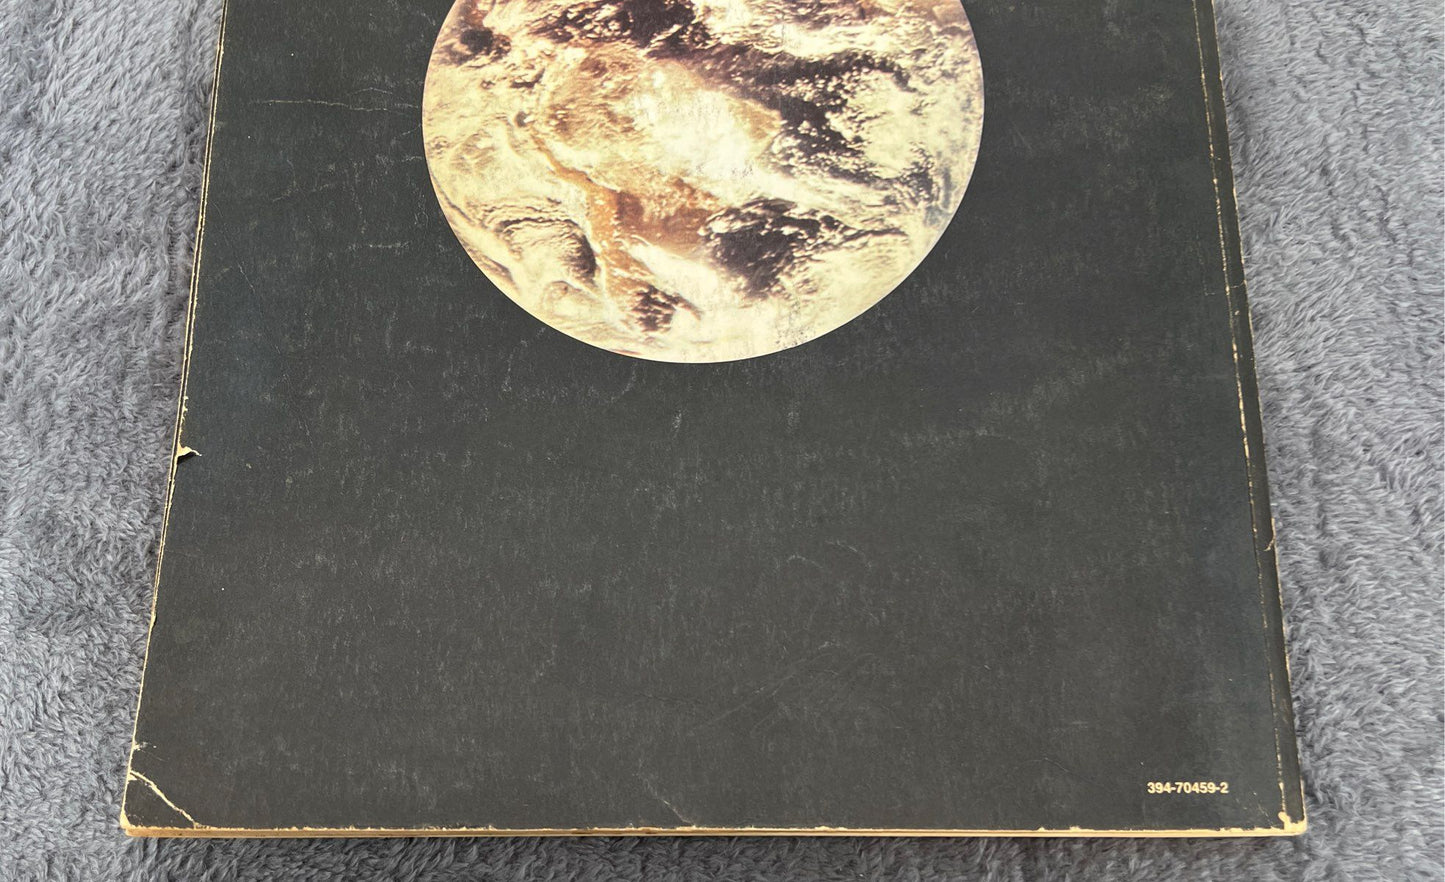 VTG The Last Whole Earth Catalog: Access To Tools-Random House-May, 1971 #1170